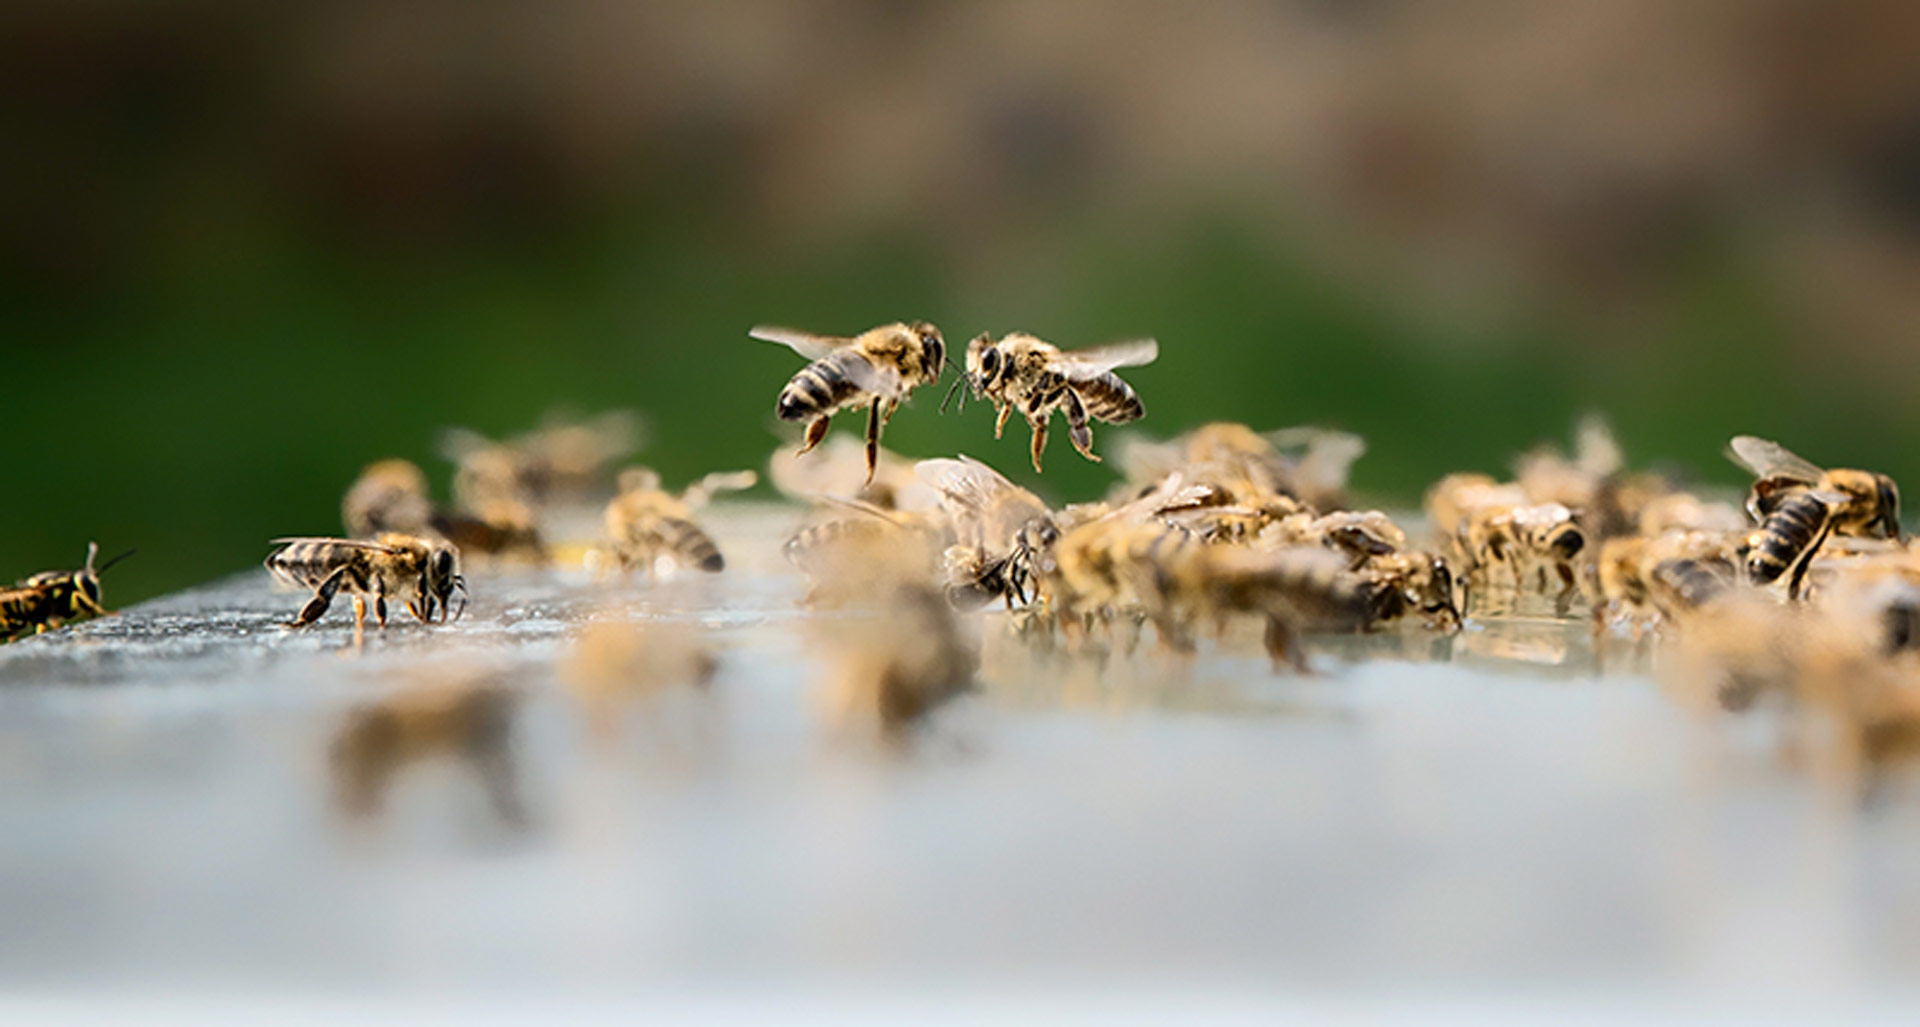 Spolek včelařů Hradčanské včely